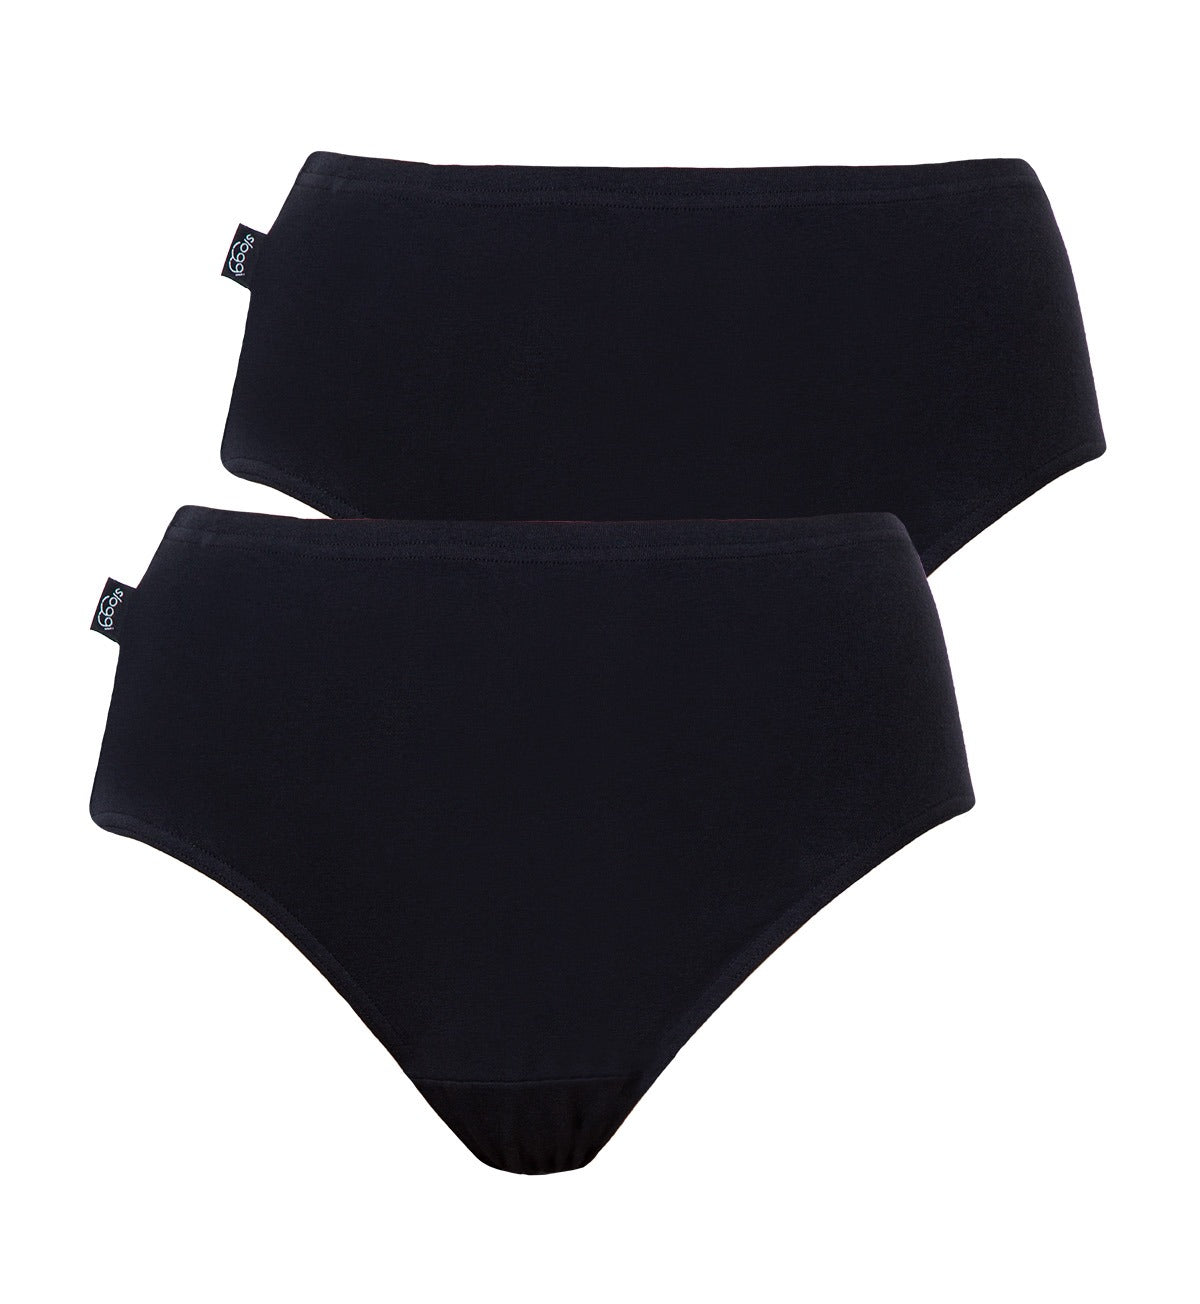 BON'A PARTE - Sloggi underwear  Buy Sloggi bras and panties online.